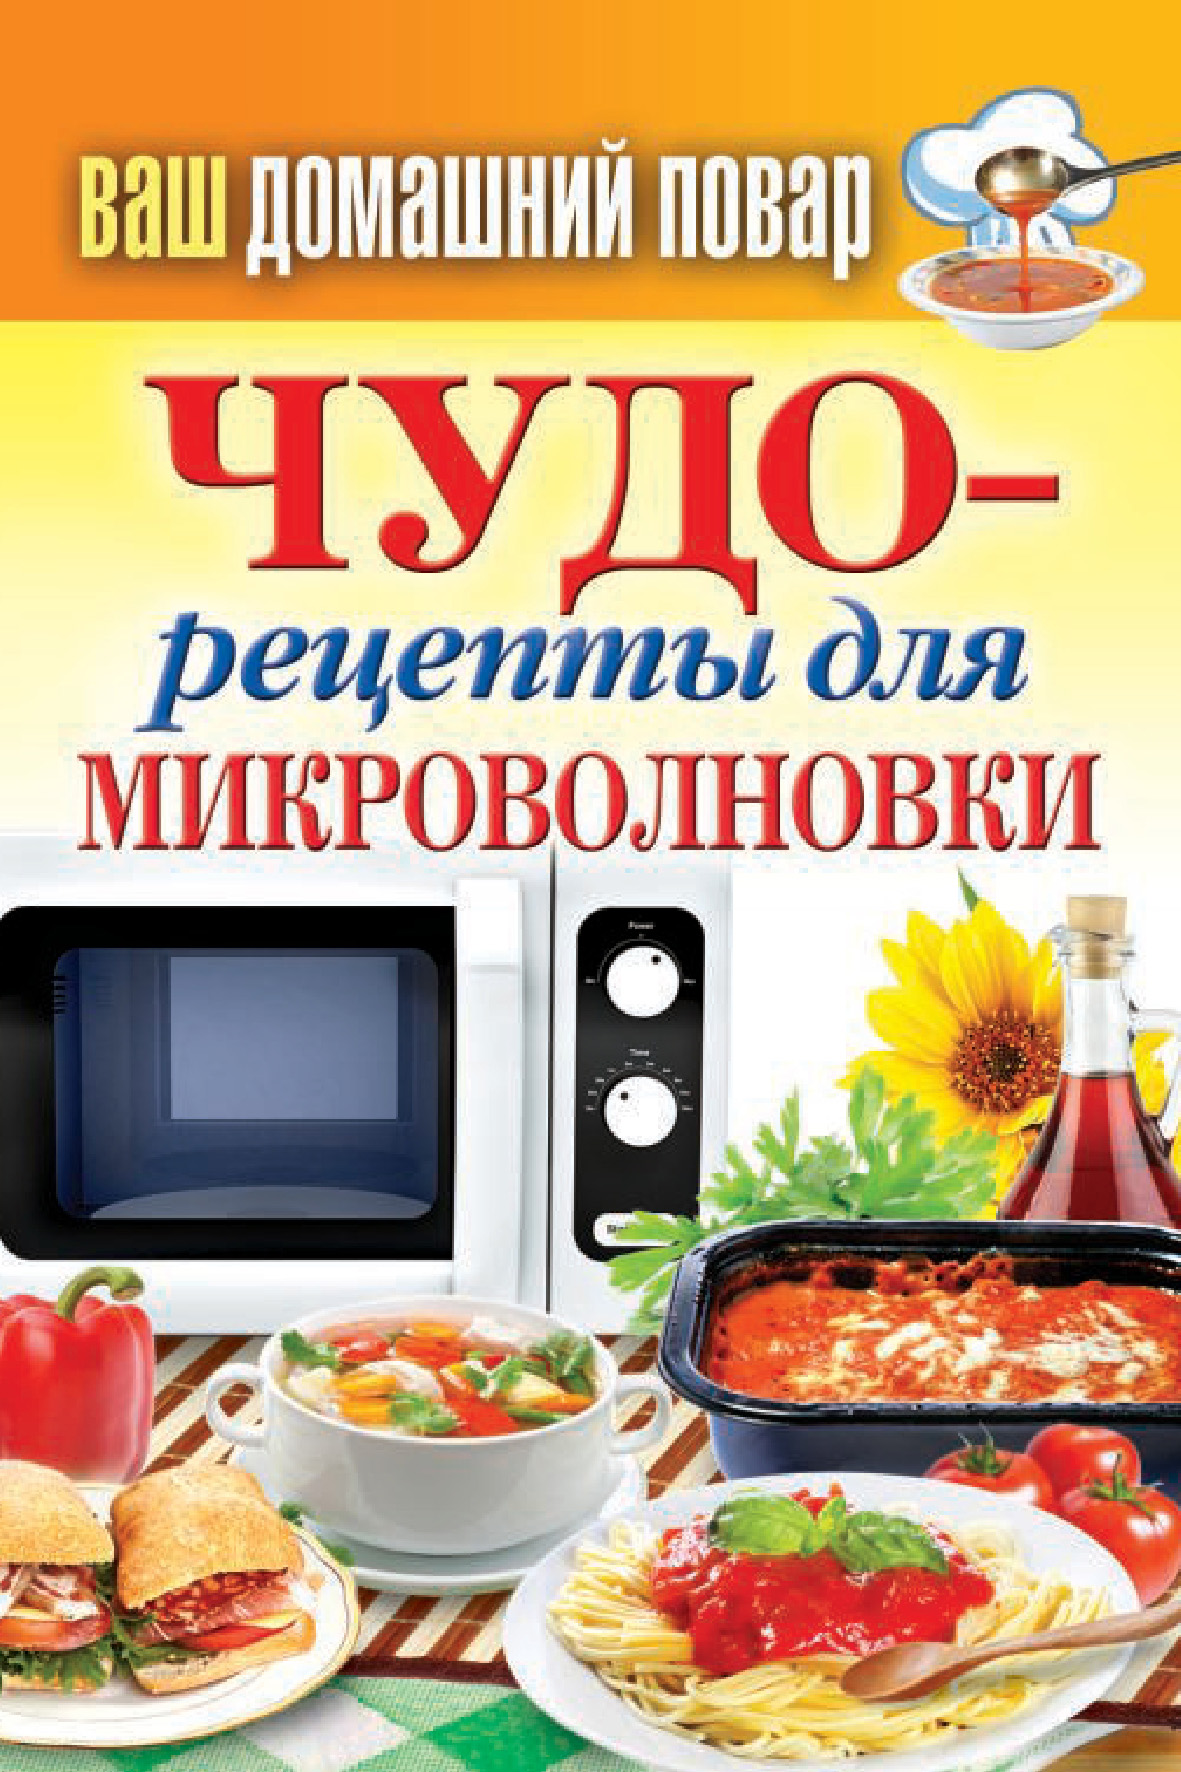 Книга Чудо-рецепты для микроволновки из серии , созданная Сергей Кашин, может относится к жанру Кулинария. Стоимость электронной книги Чудо-рецепты для микроволновки с идентификатором 8010581 составляет 59.00 руб.